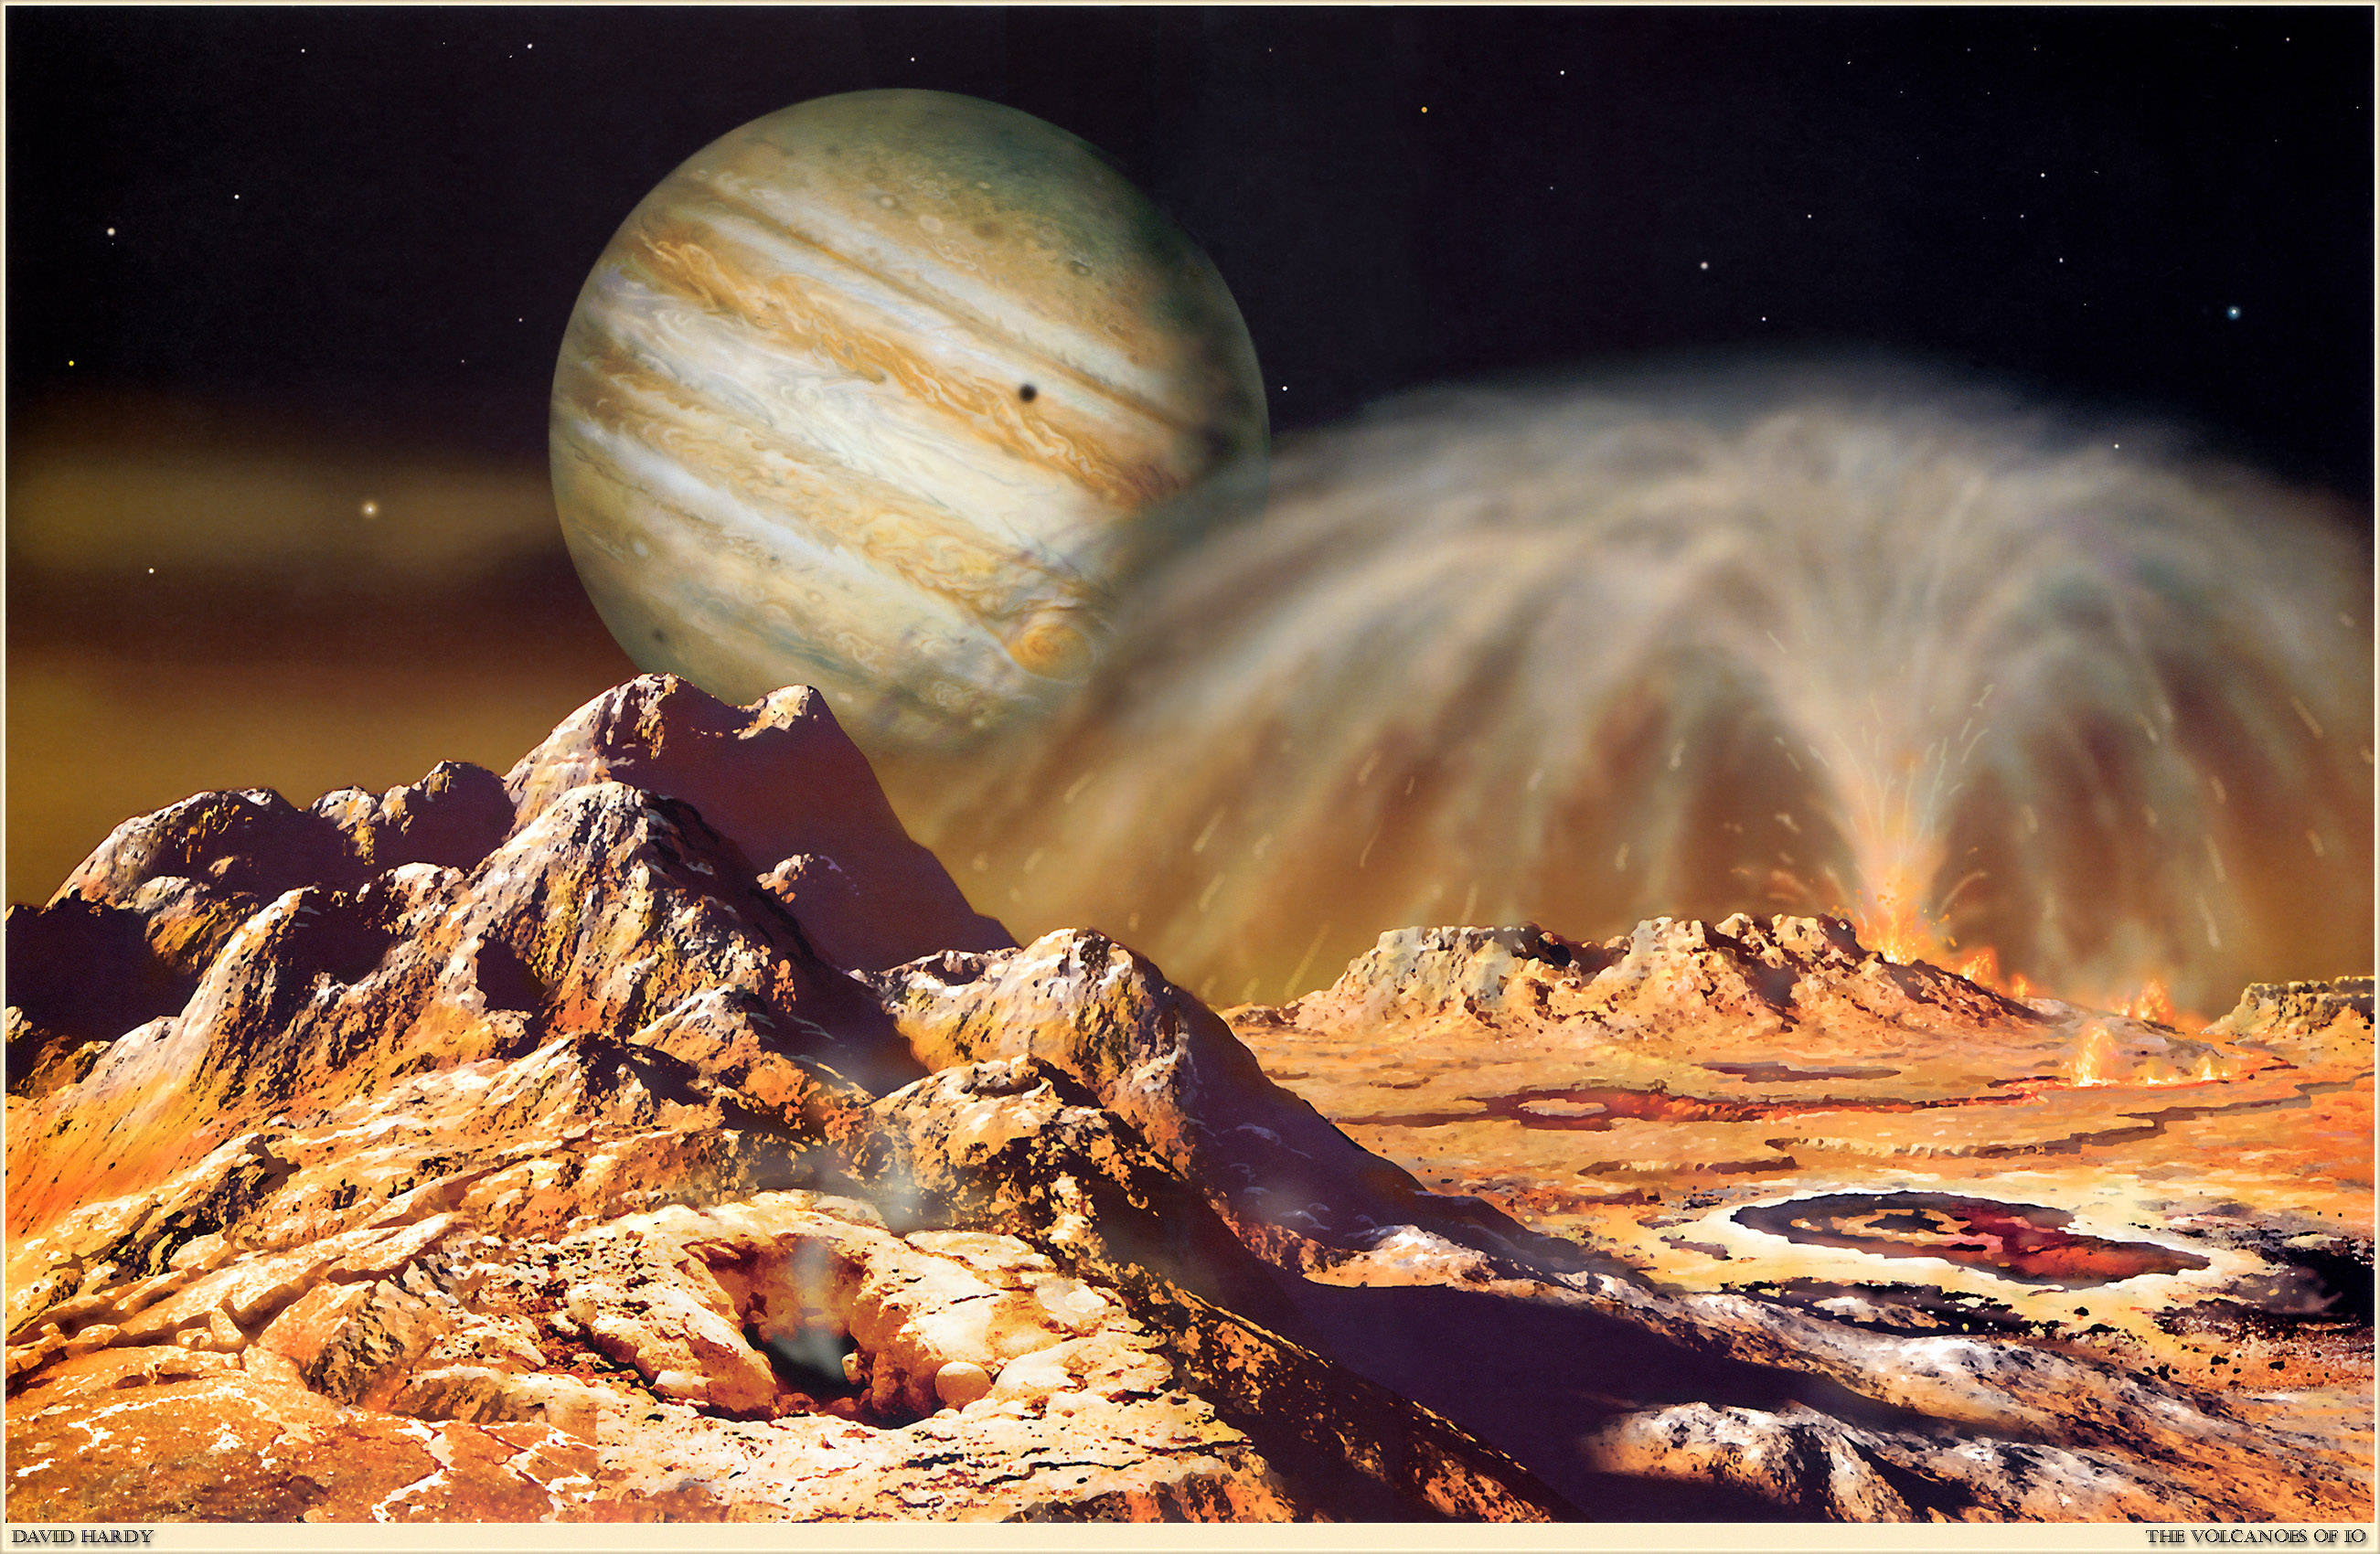 原创42万公里外木卫一火山为何会引起木星极光什么原理